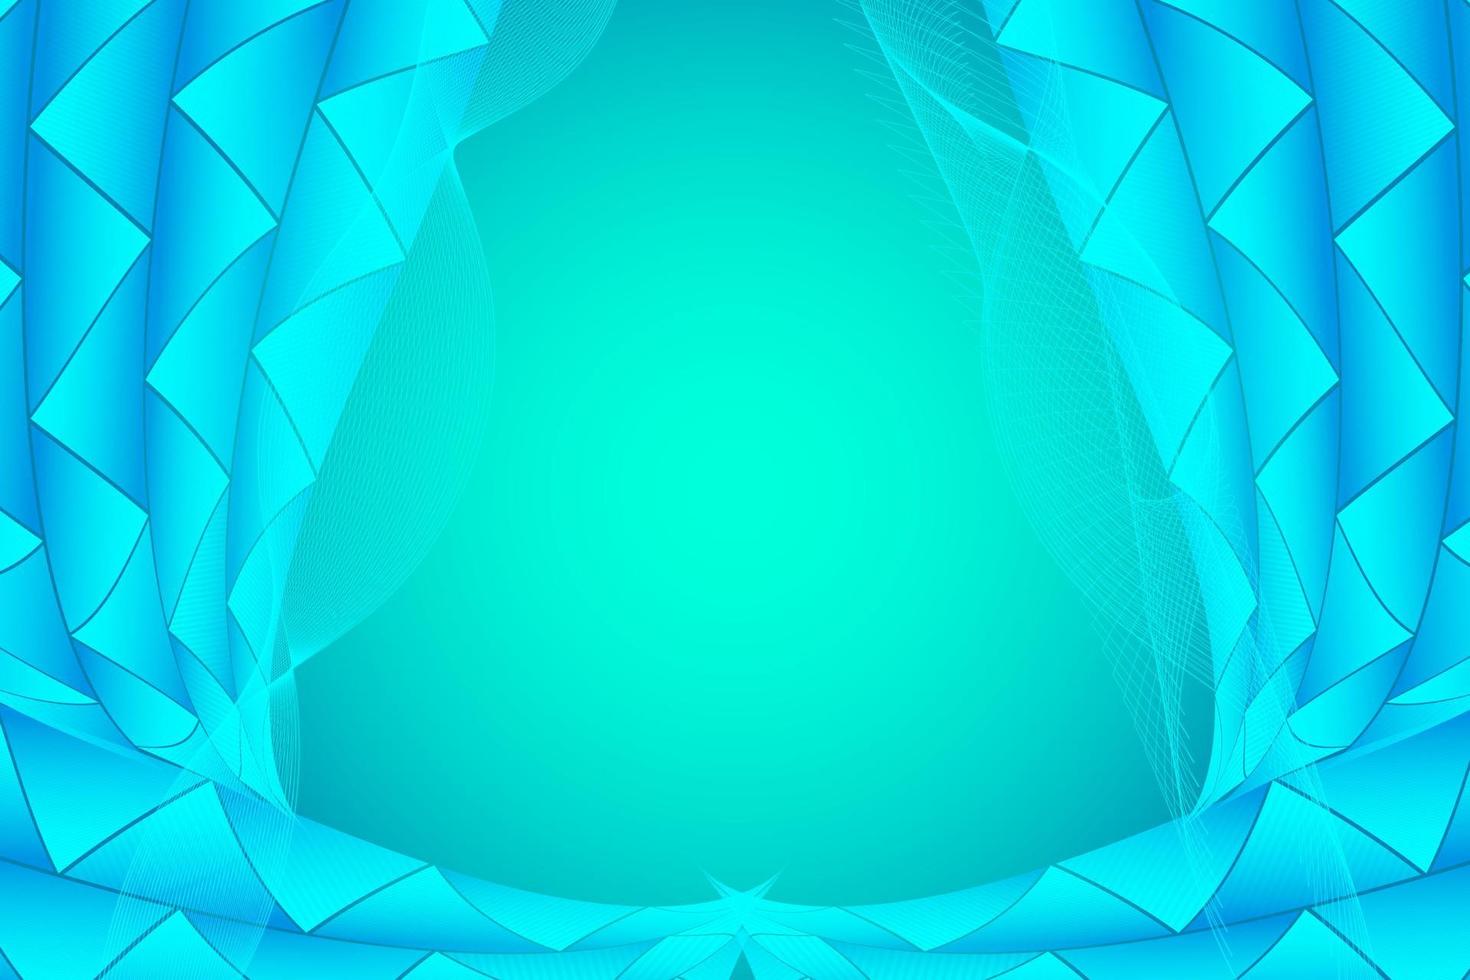 color azul de fondo abstracto moderno con diseño geométrico y ondulado vector